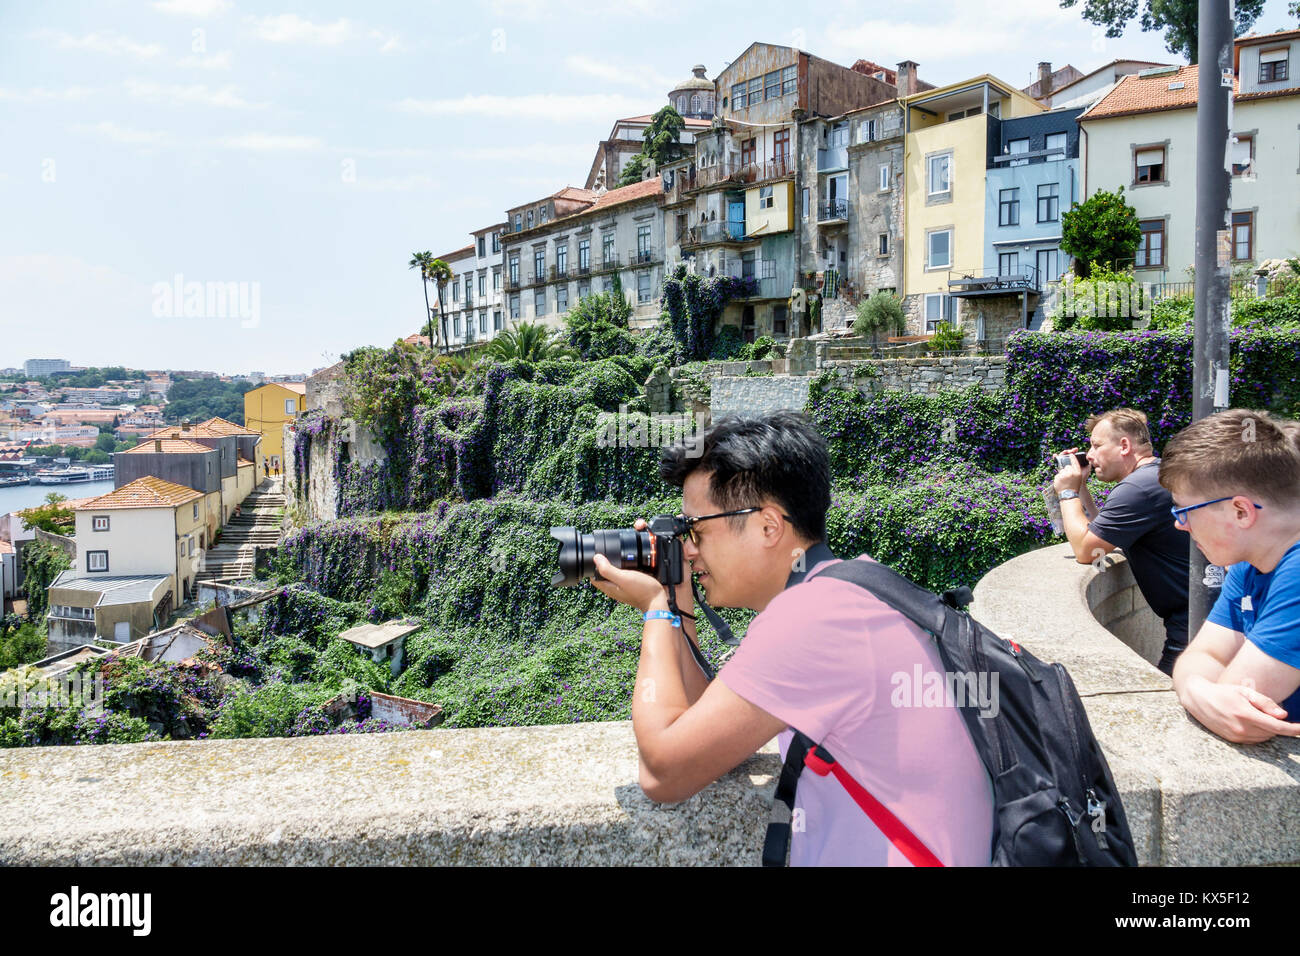 Porto Portugal, Douro River Water, historisches Zentrum, Luis I Bridge, Metro do Porto, Wasser, Skyline, Aussicht, Asiaten ethnische Einwanderer Minderheit, adu Stockfoto